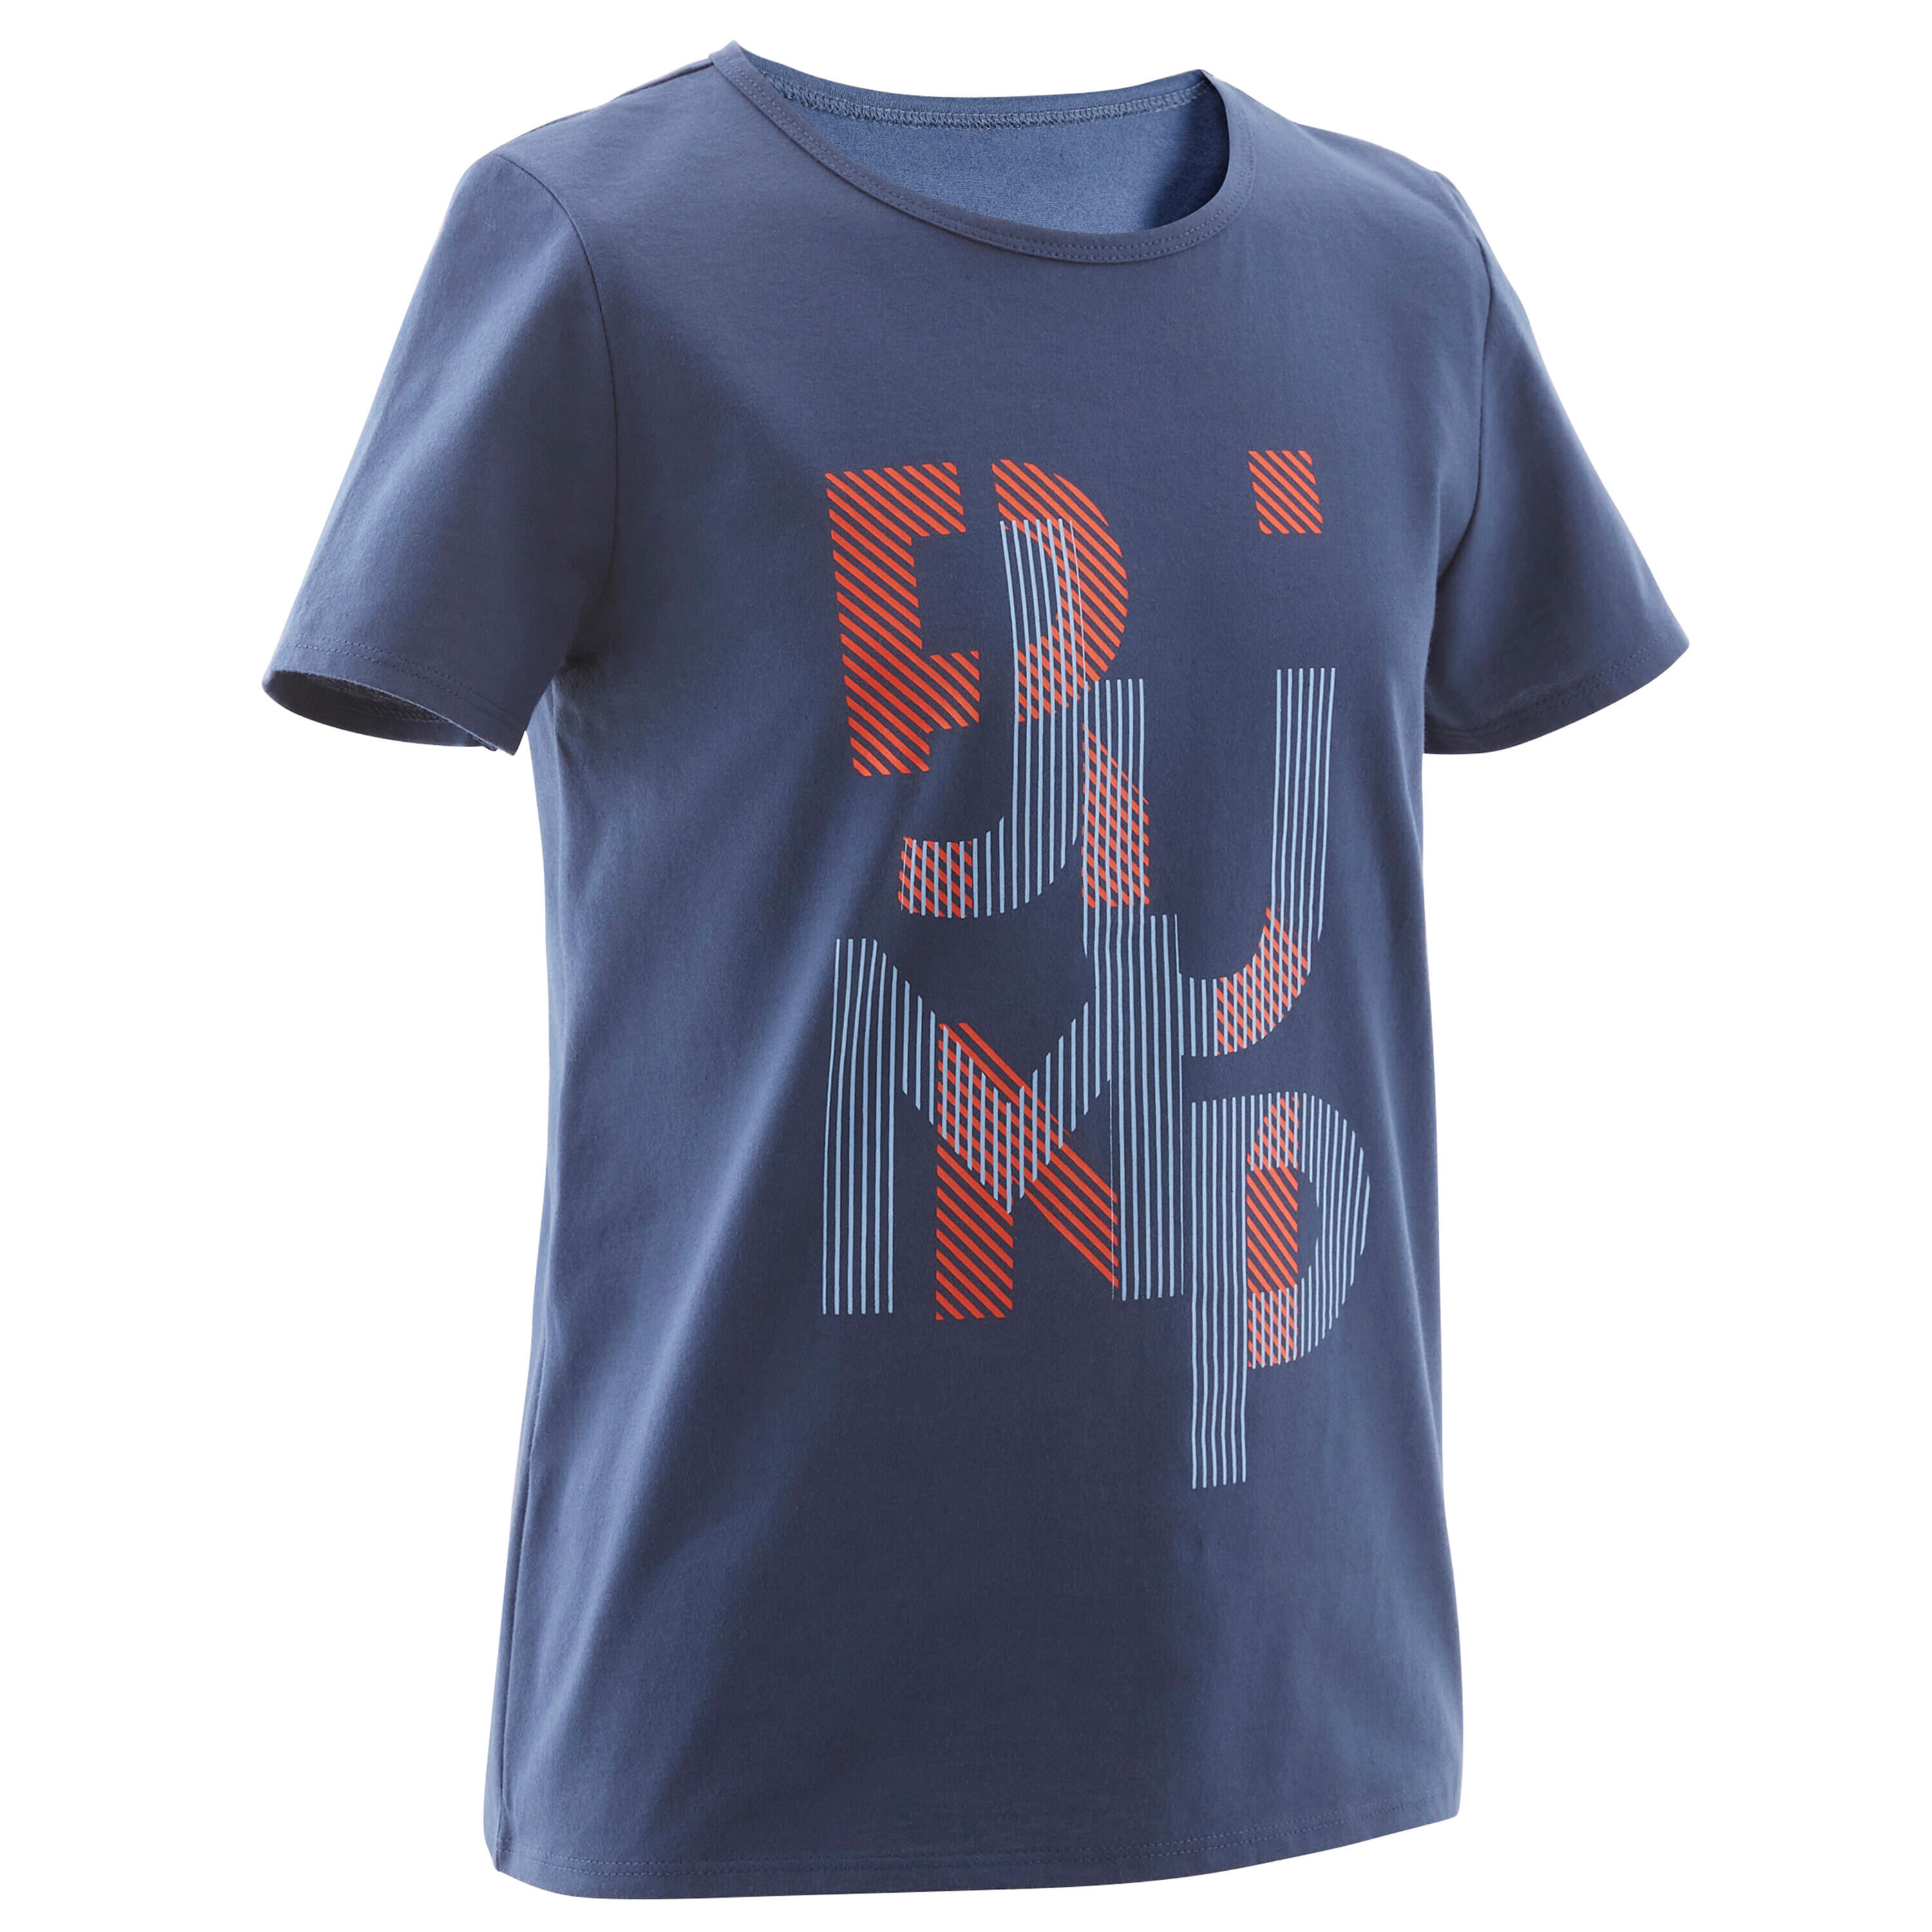 DOMYOS Kids' Basic T-Shirt - Blue Jean Print